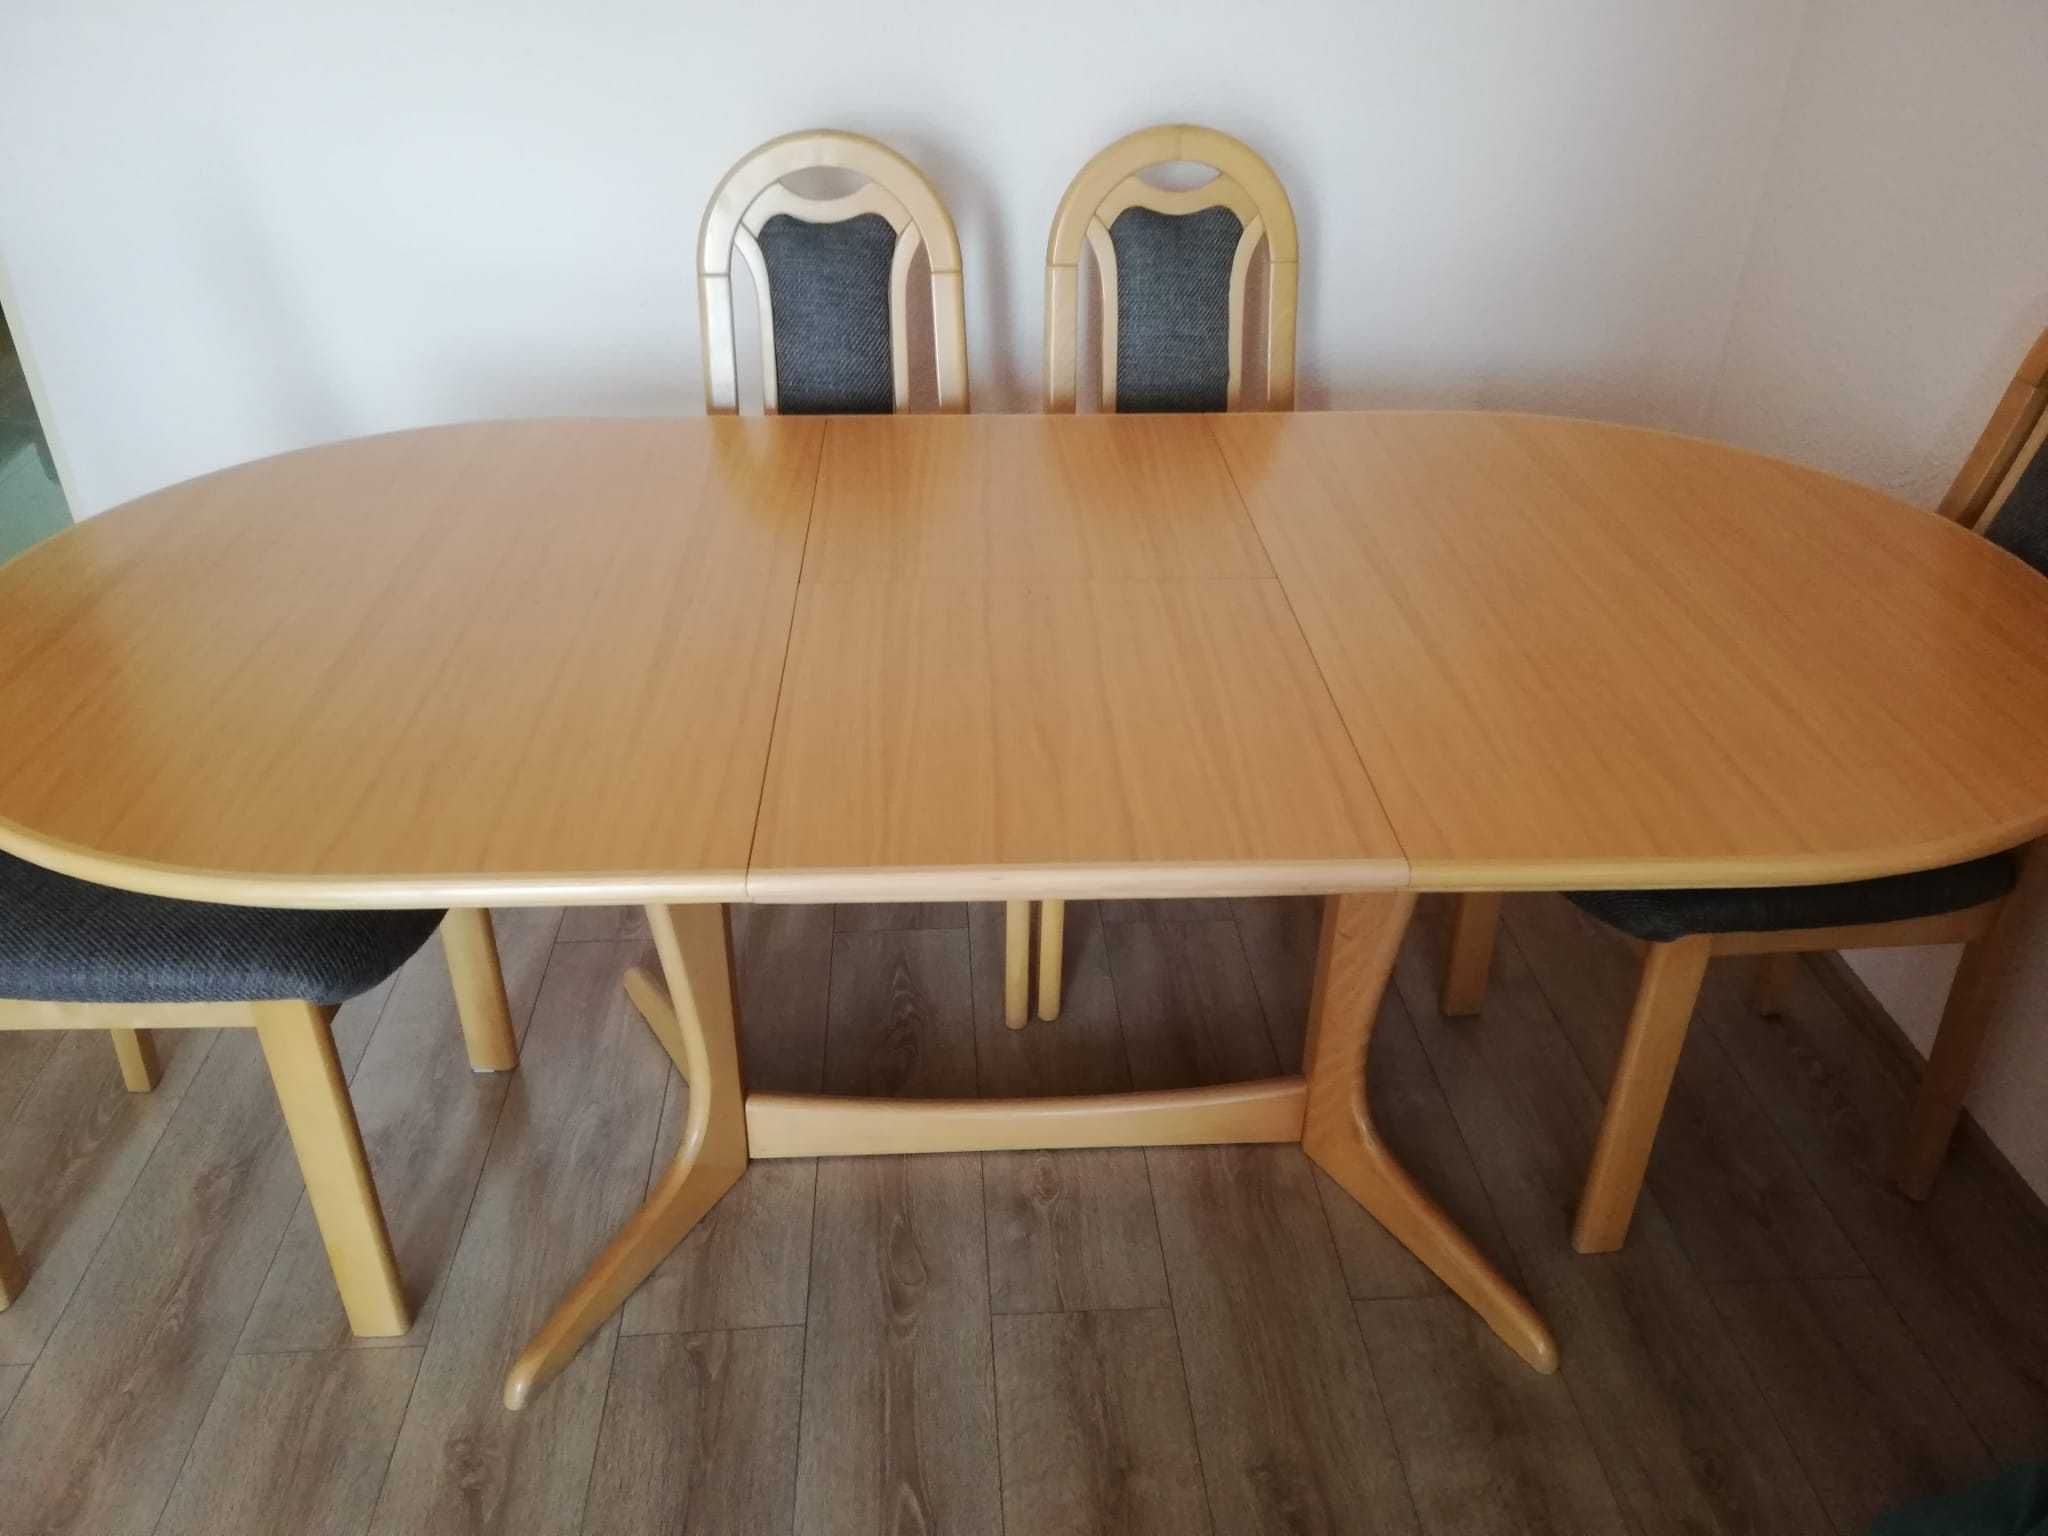 Stół rozkładany + 6 krzeseł